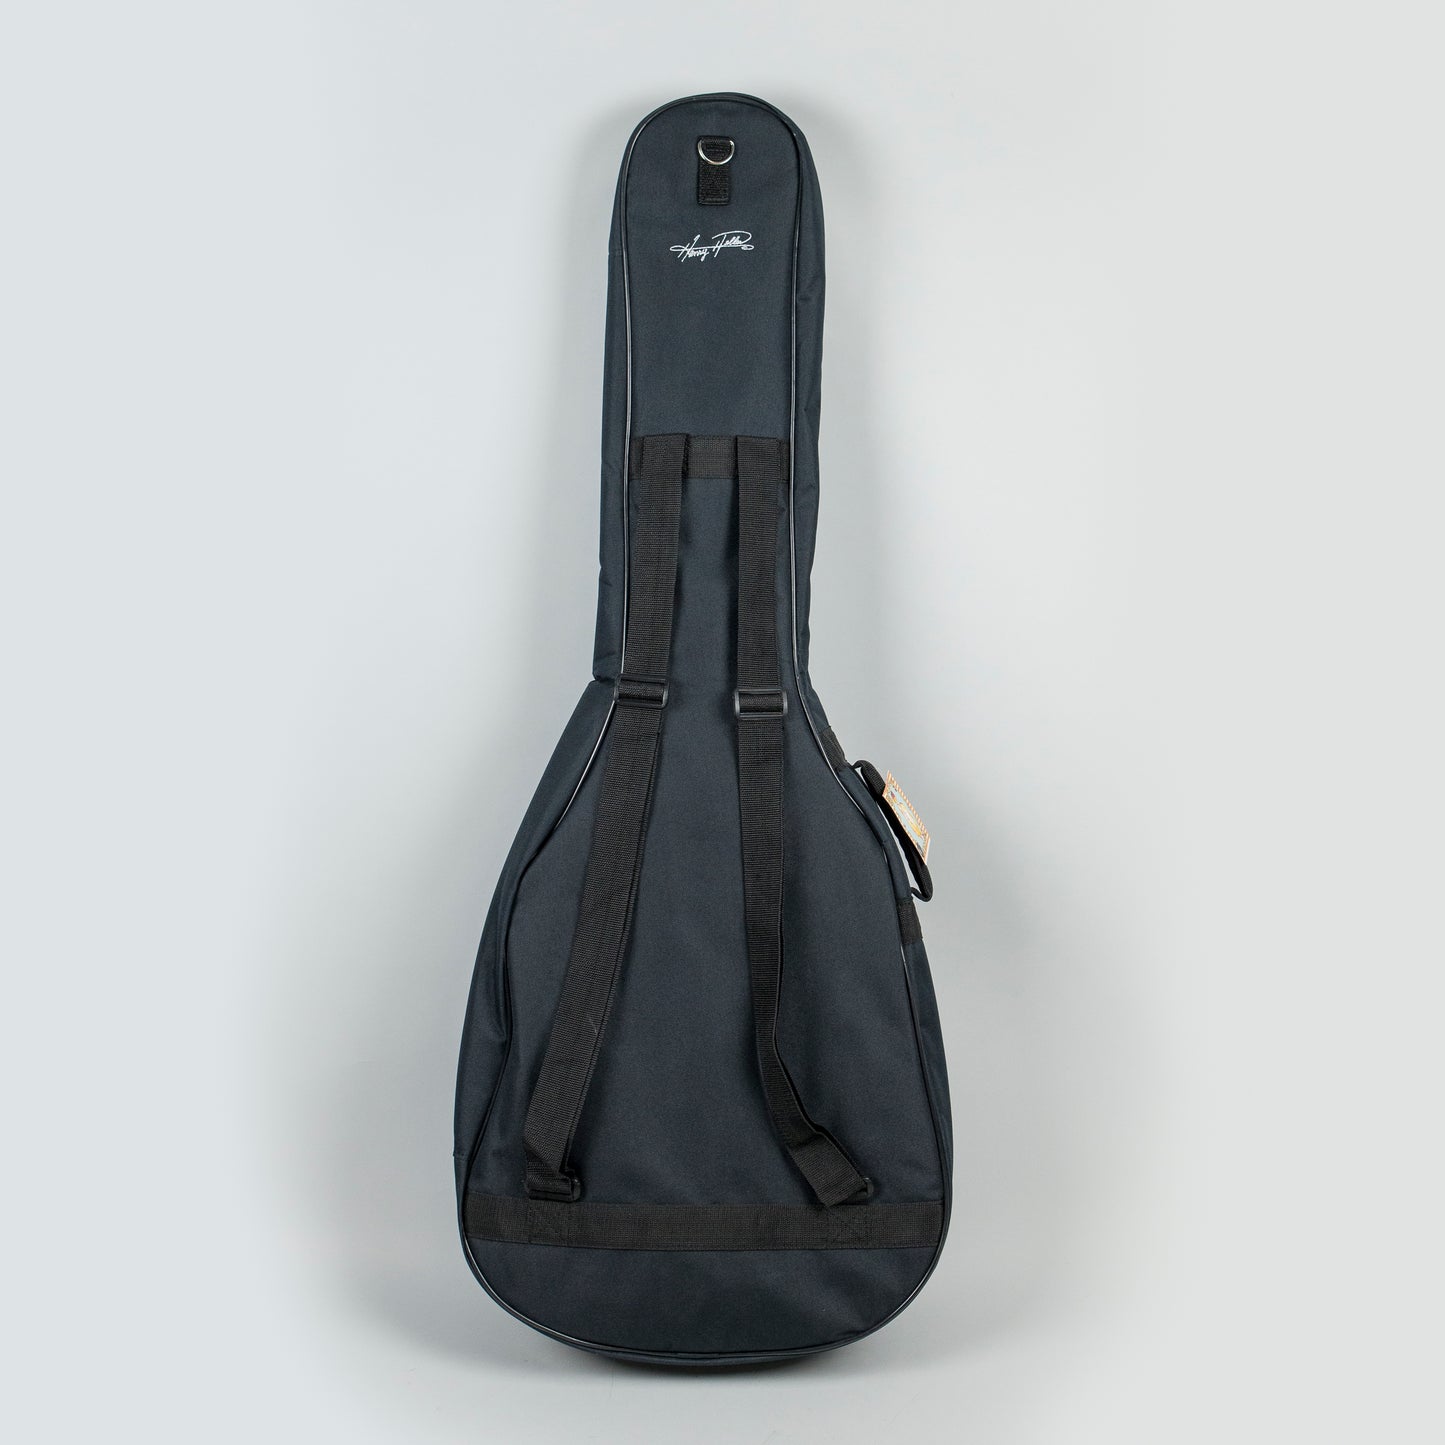 Carlton Music Custom-Branded Acoustic Guitar Gig Bag